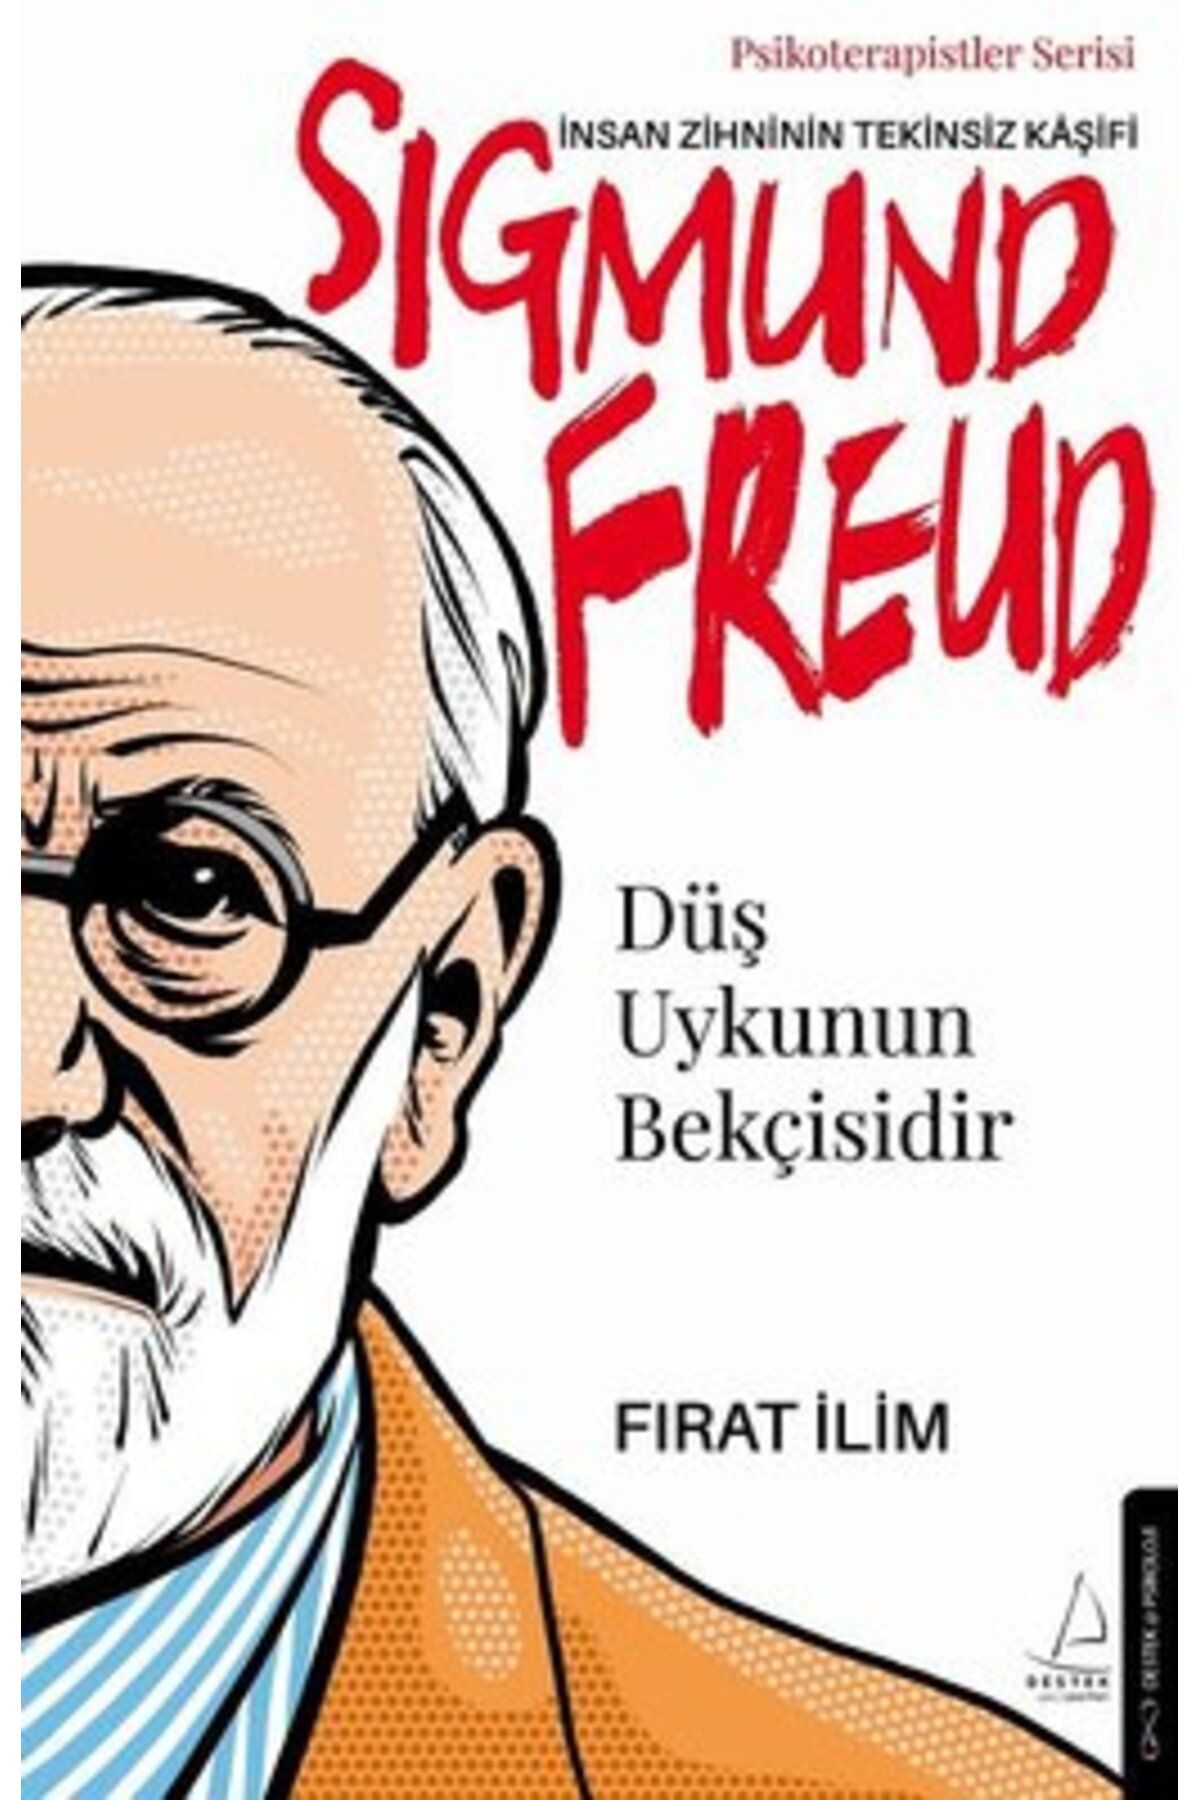 Destek Yayınları Sigmund Freud: Insan Zihninin Tekinsiz Kaşifi - Düş Uykunun Bekçisidir - Psikoterapistler Serisi